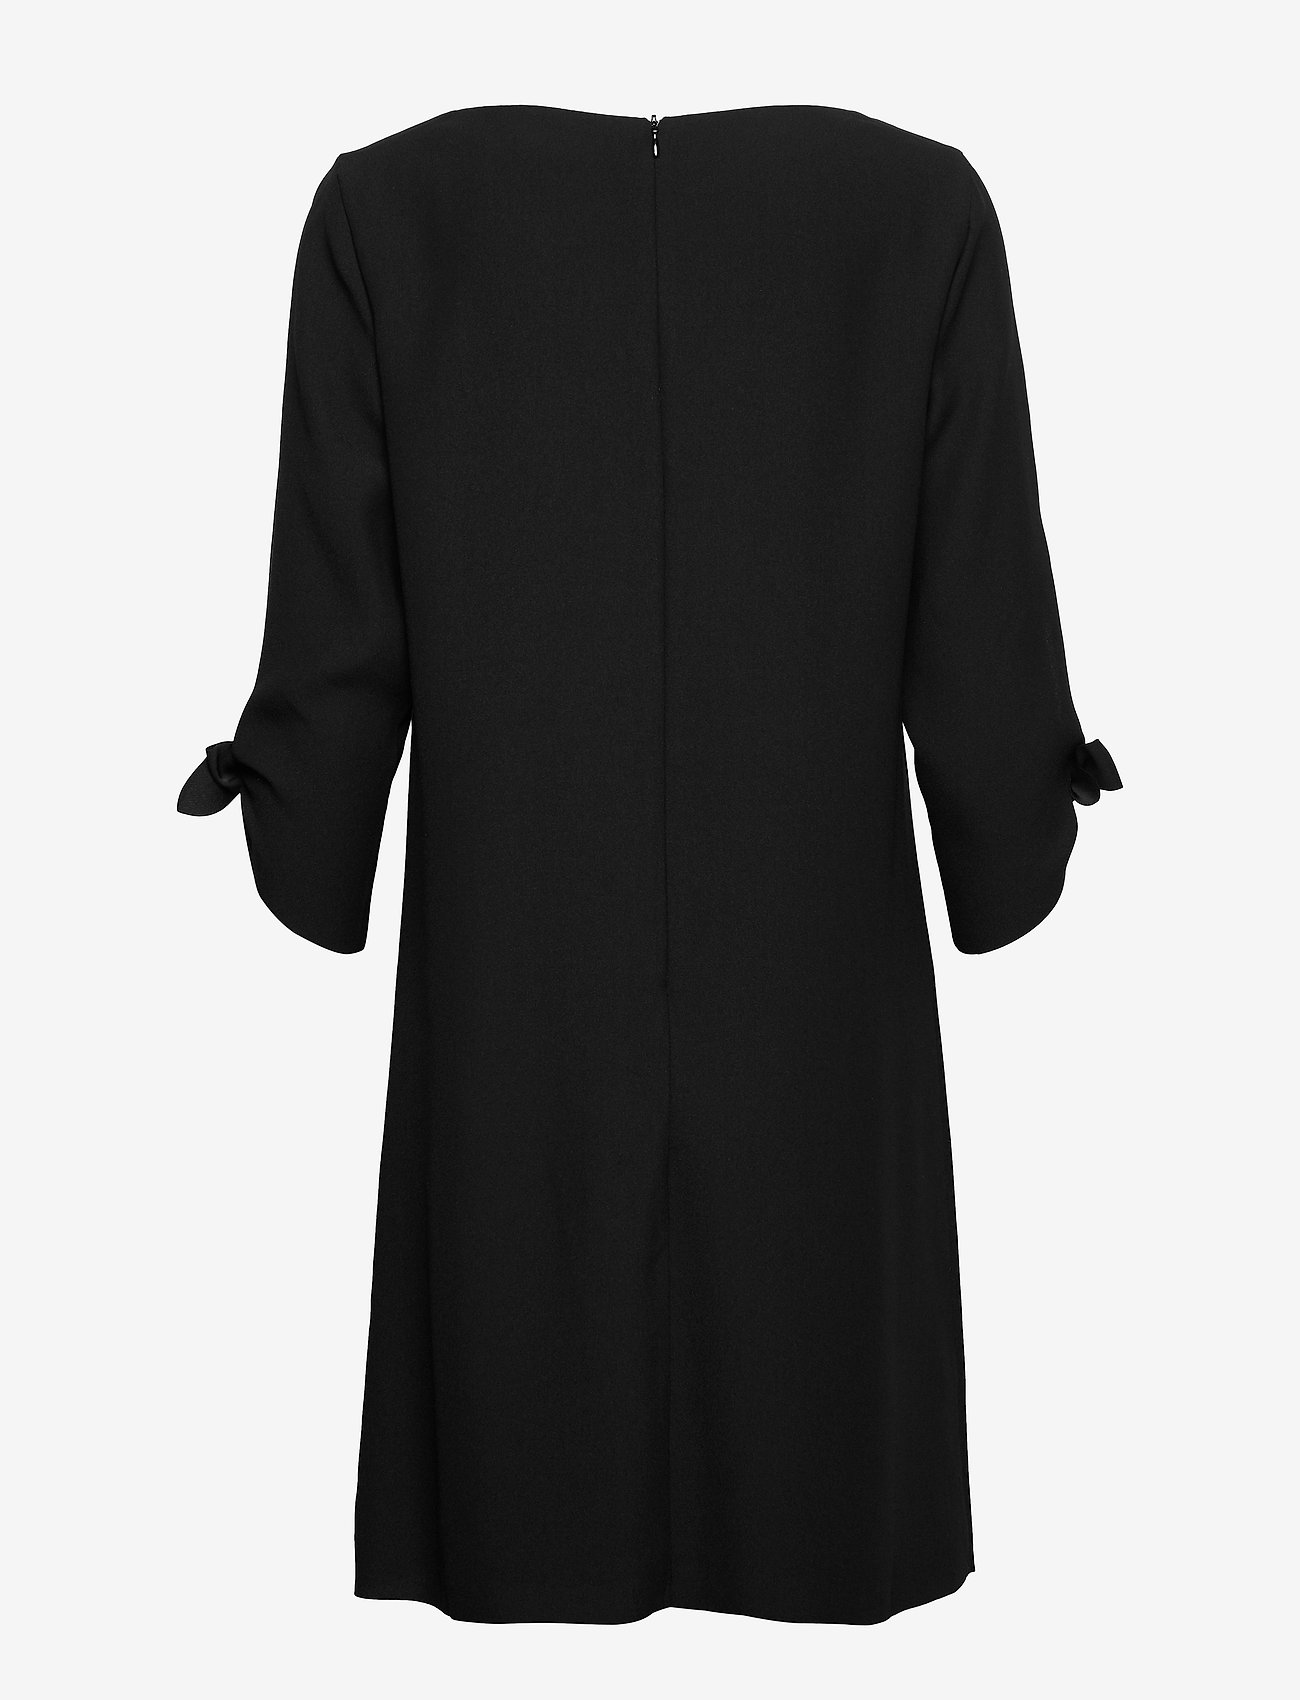 Dresses Light Woven Black 6999 € Esprit Collection